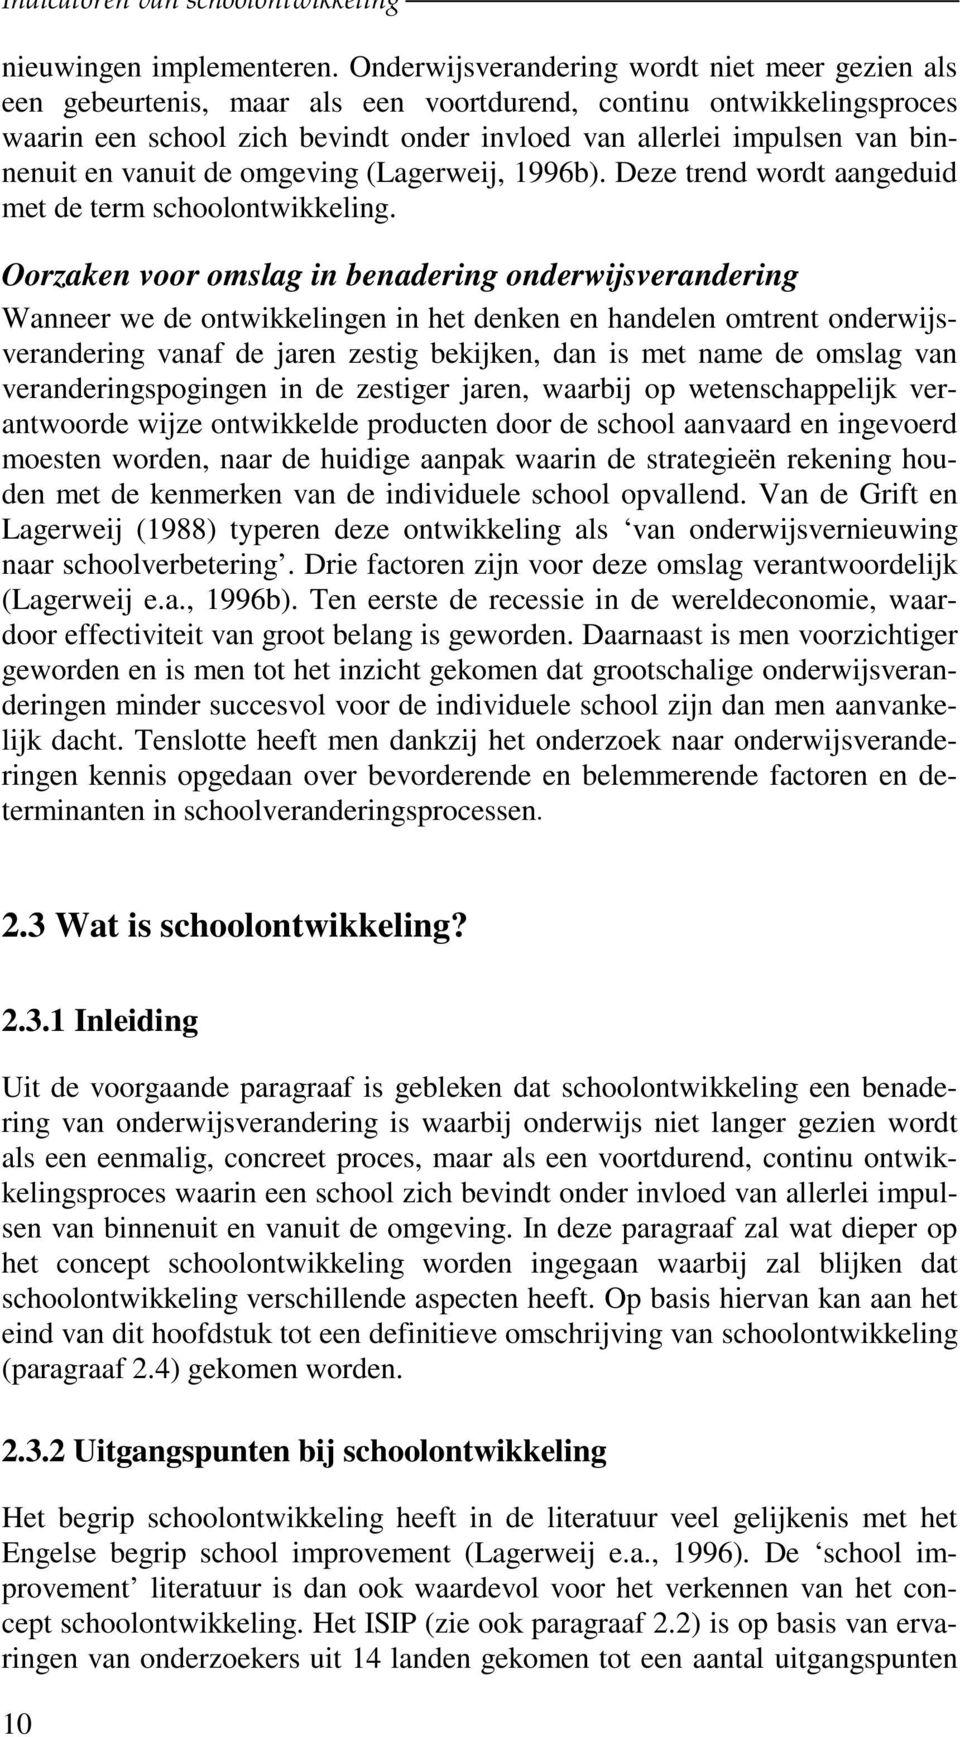 en vanuit de omgeving (Lagerweij, 1996b). Deze trend wordt aangeduid met de term schoolontwikkeling.